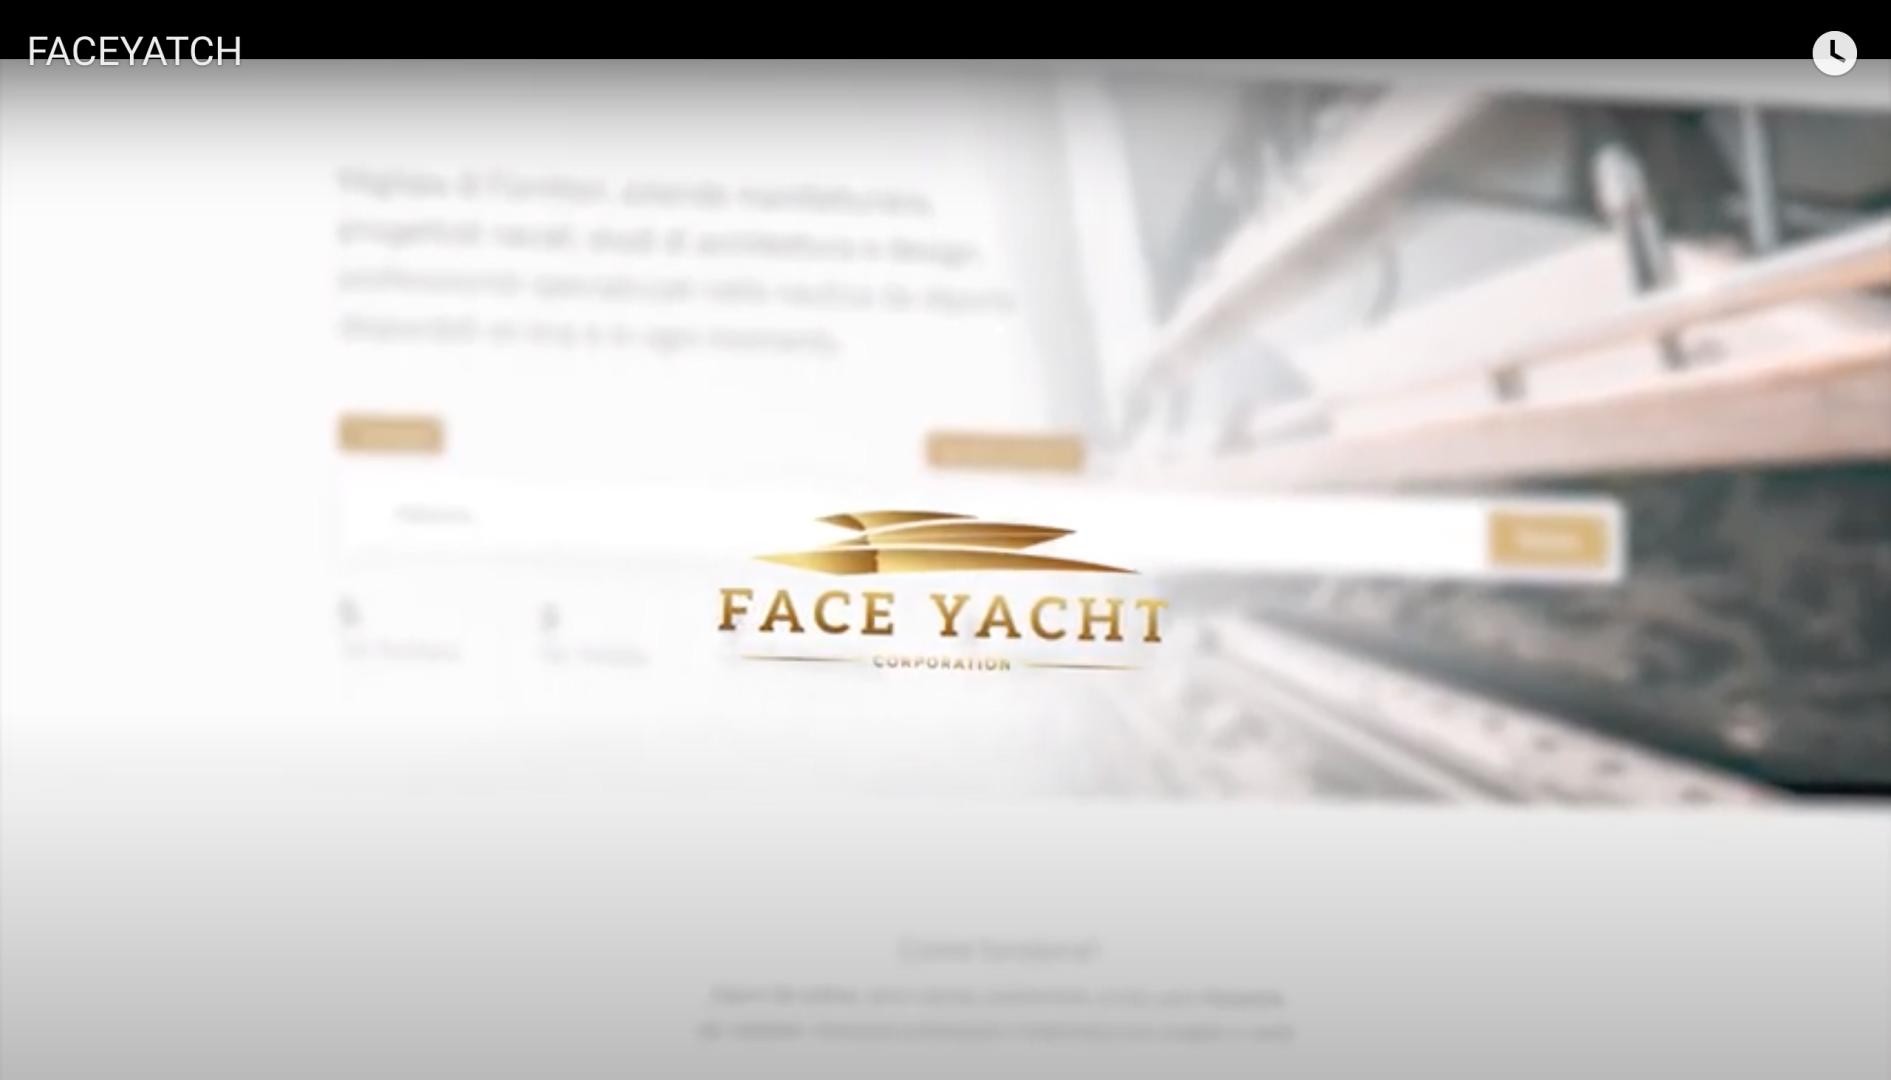 Face Yacht, il social network dedicato ai professionisti della nautica